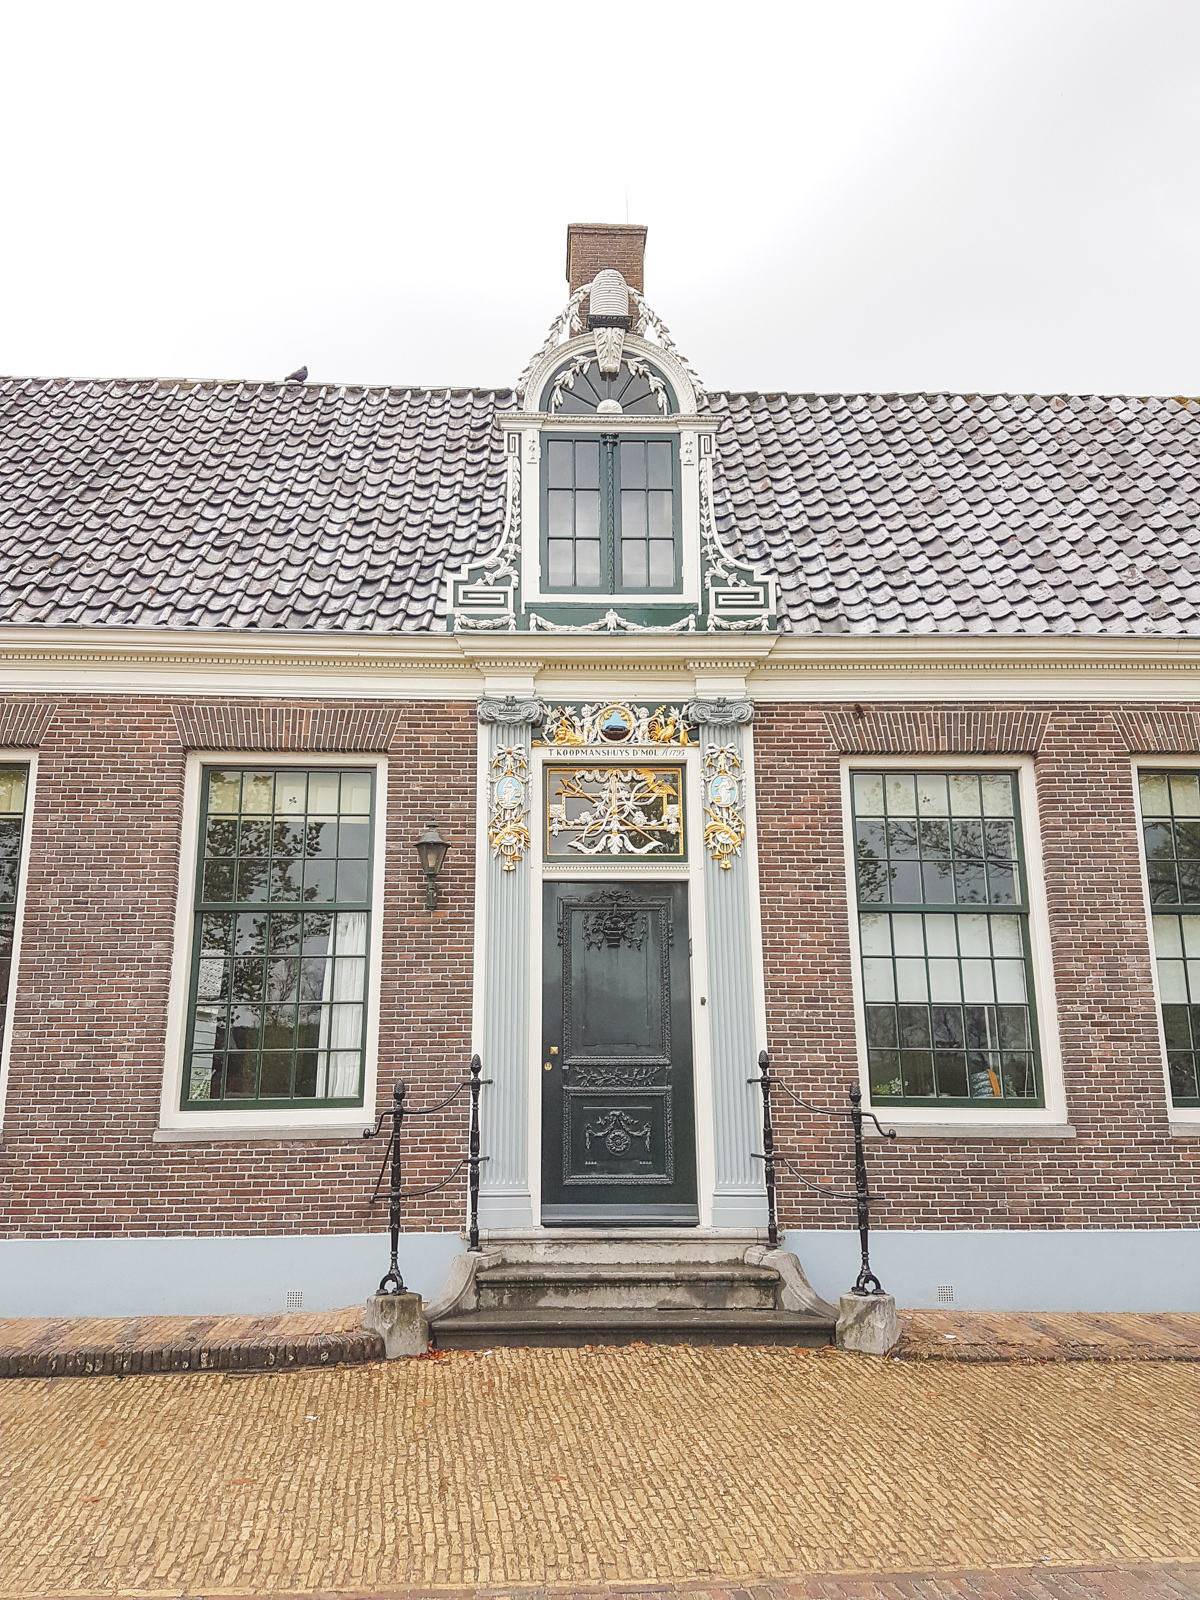 Houses at Zaanse Schans, Holland, The Netherlands